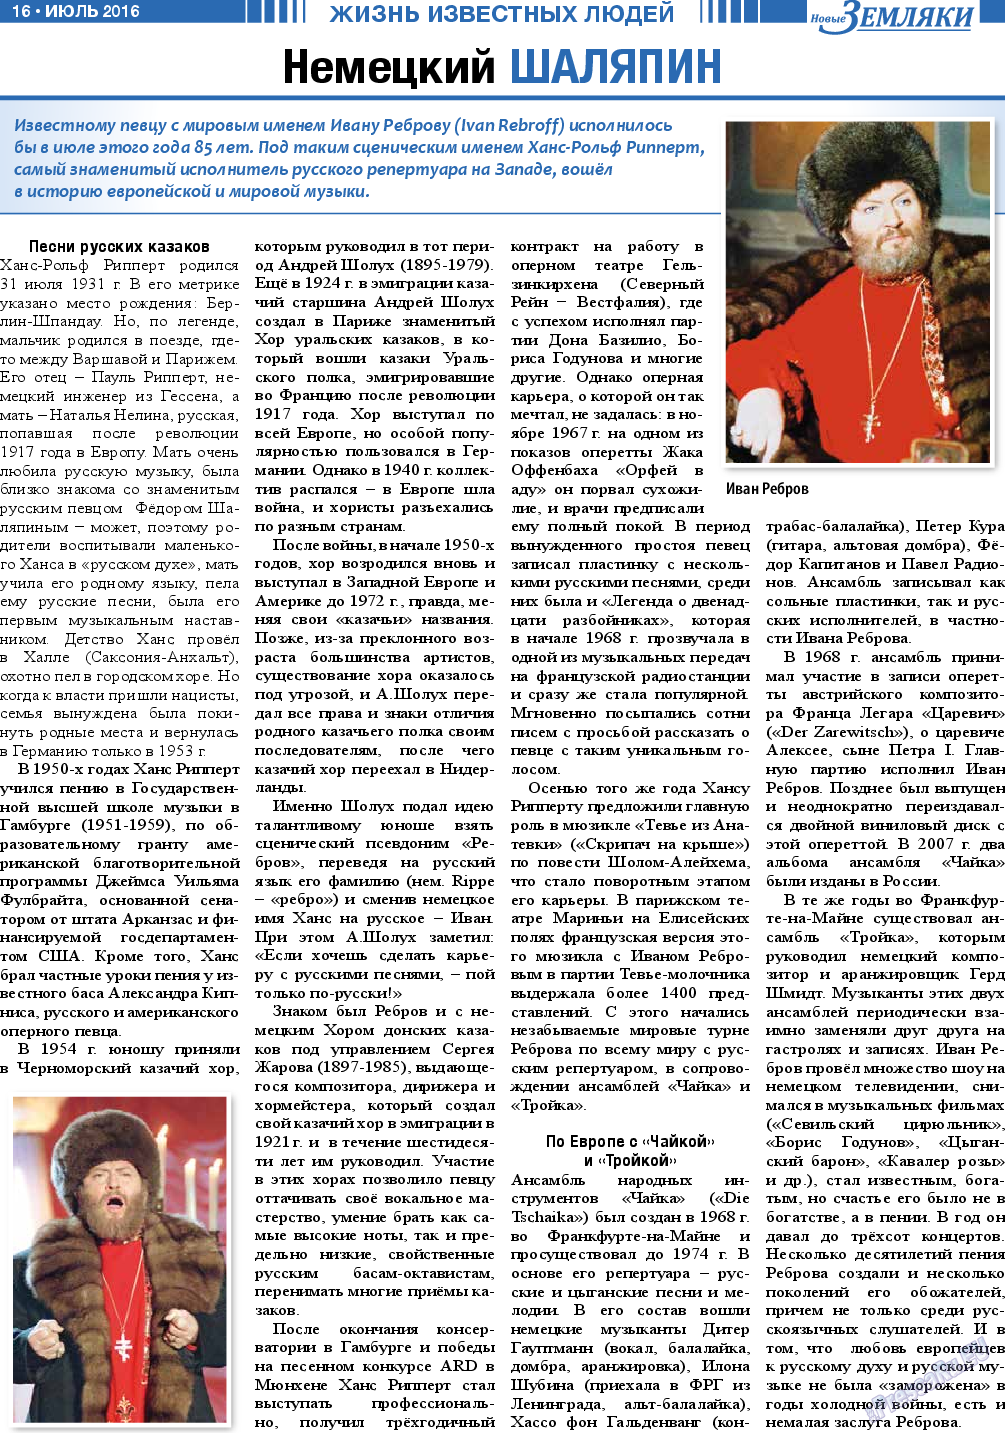 Новые Земляки, газета. 2016 №7 стр.16